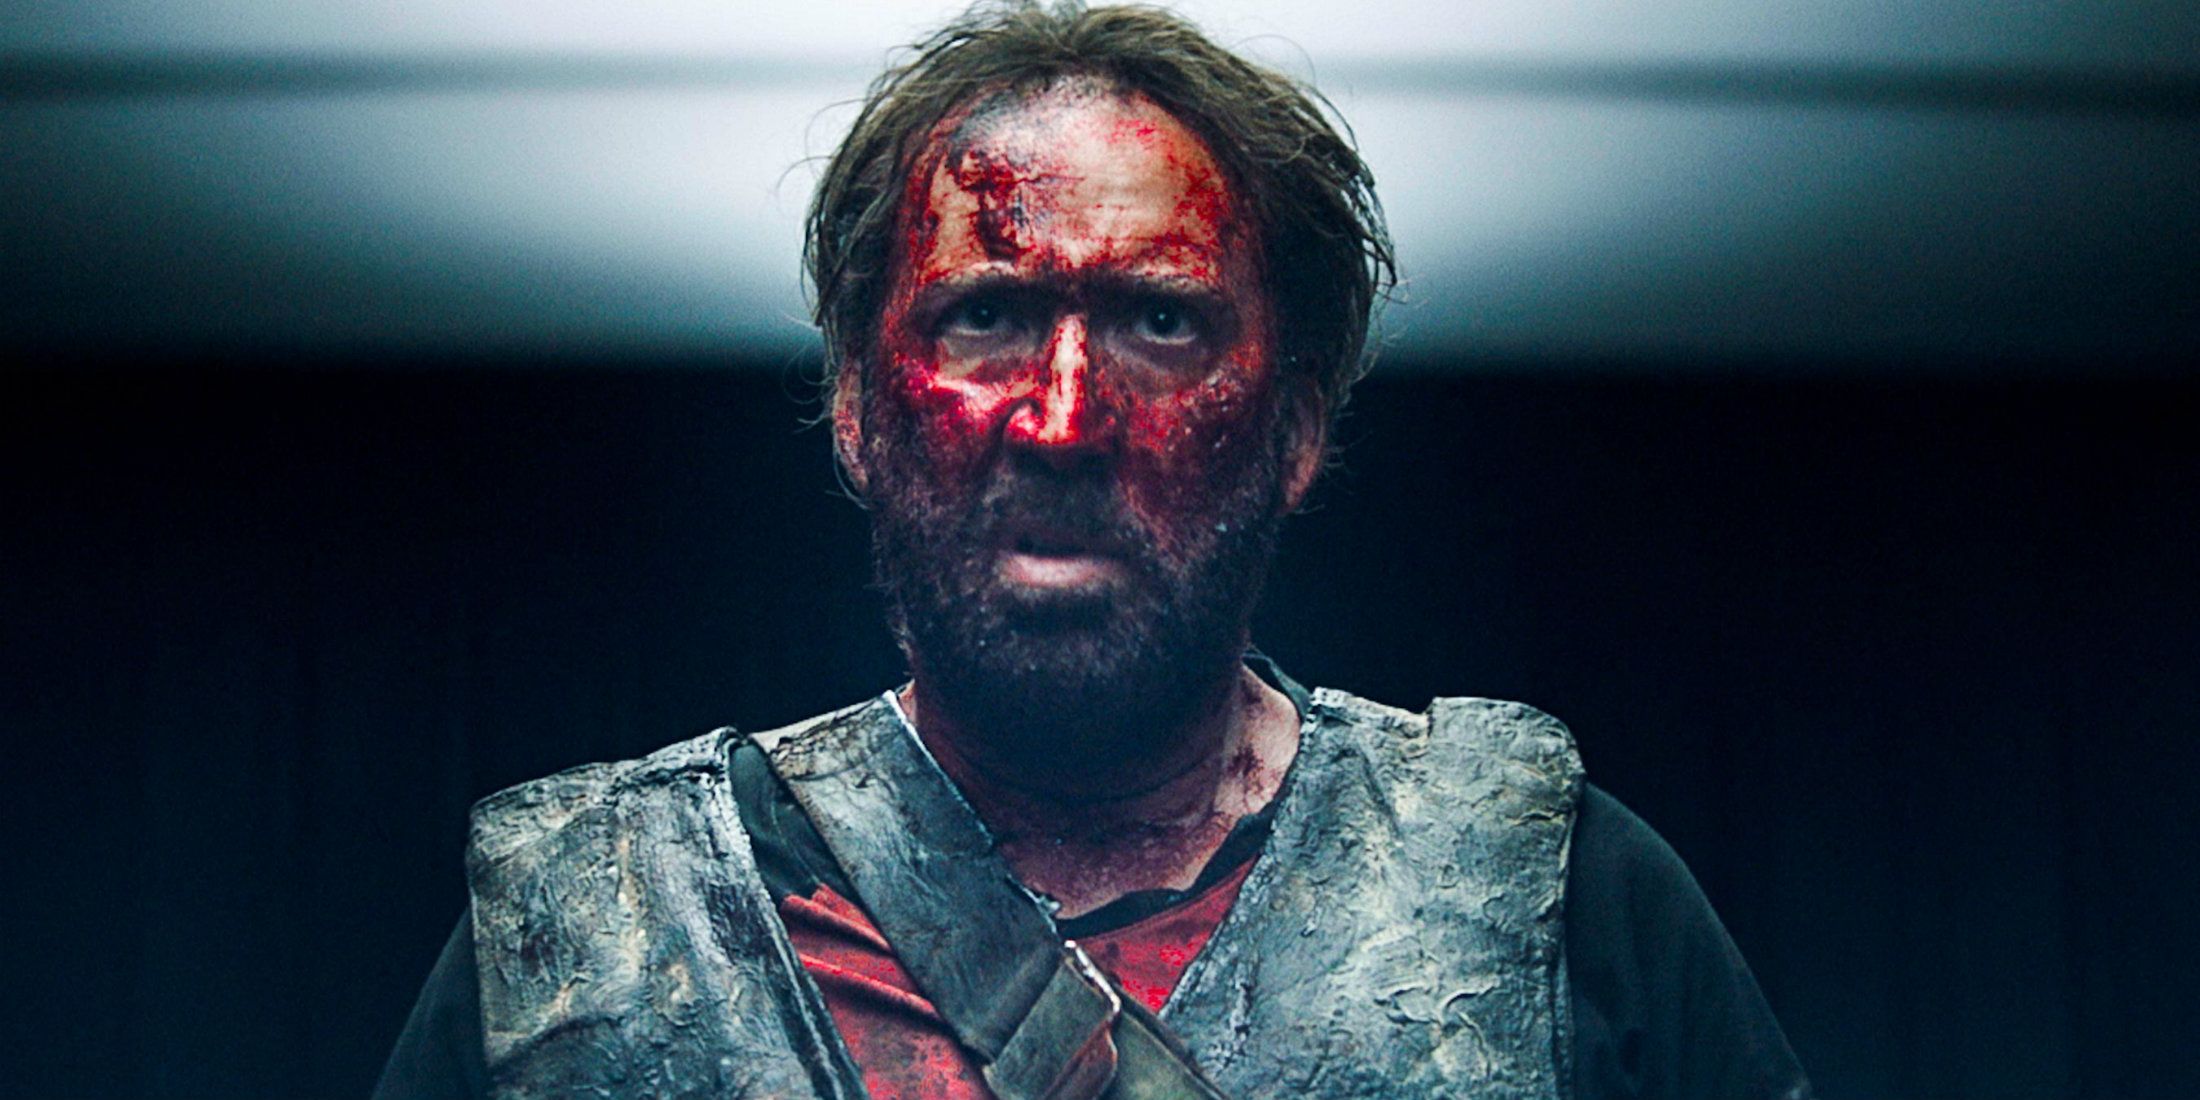 Nicolas Cage in Mandy 2018